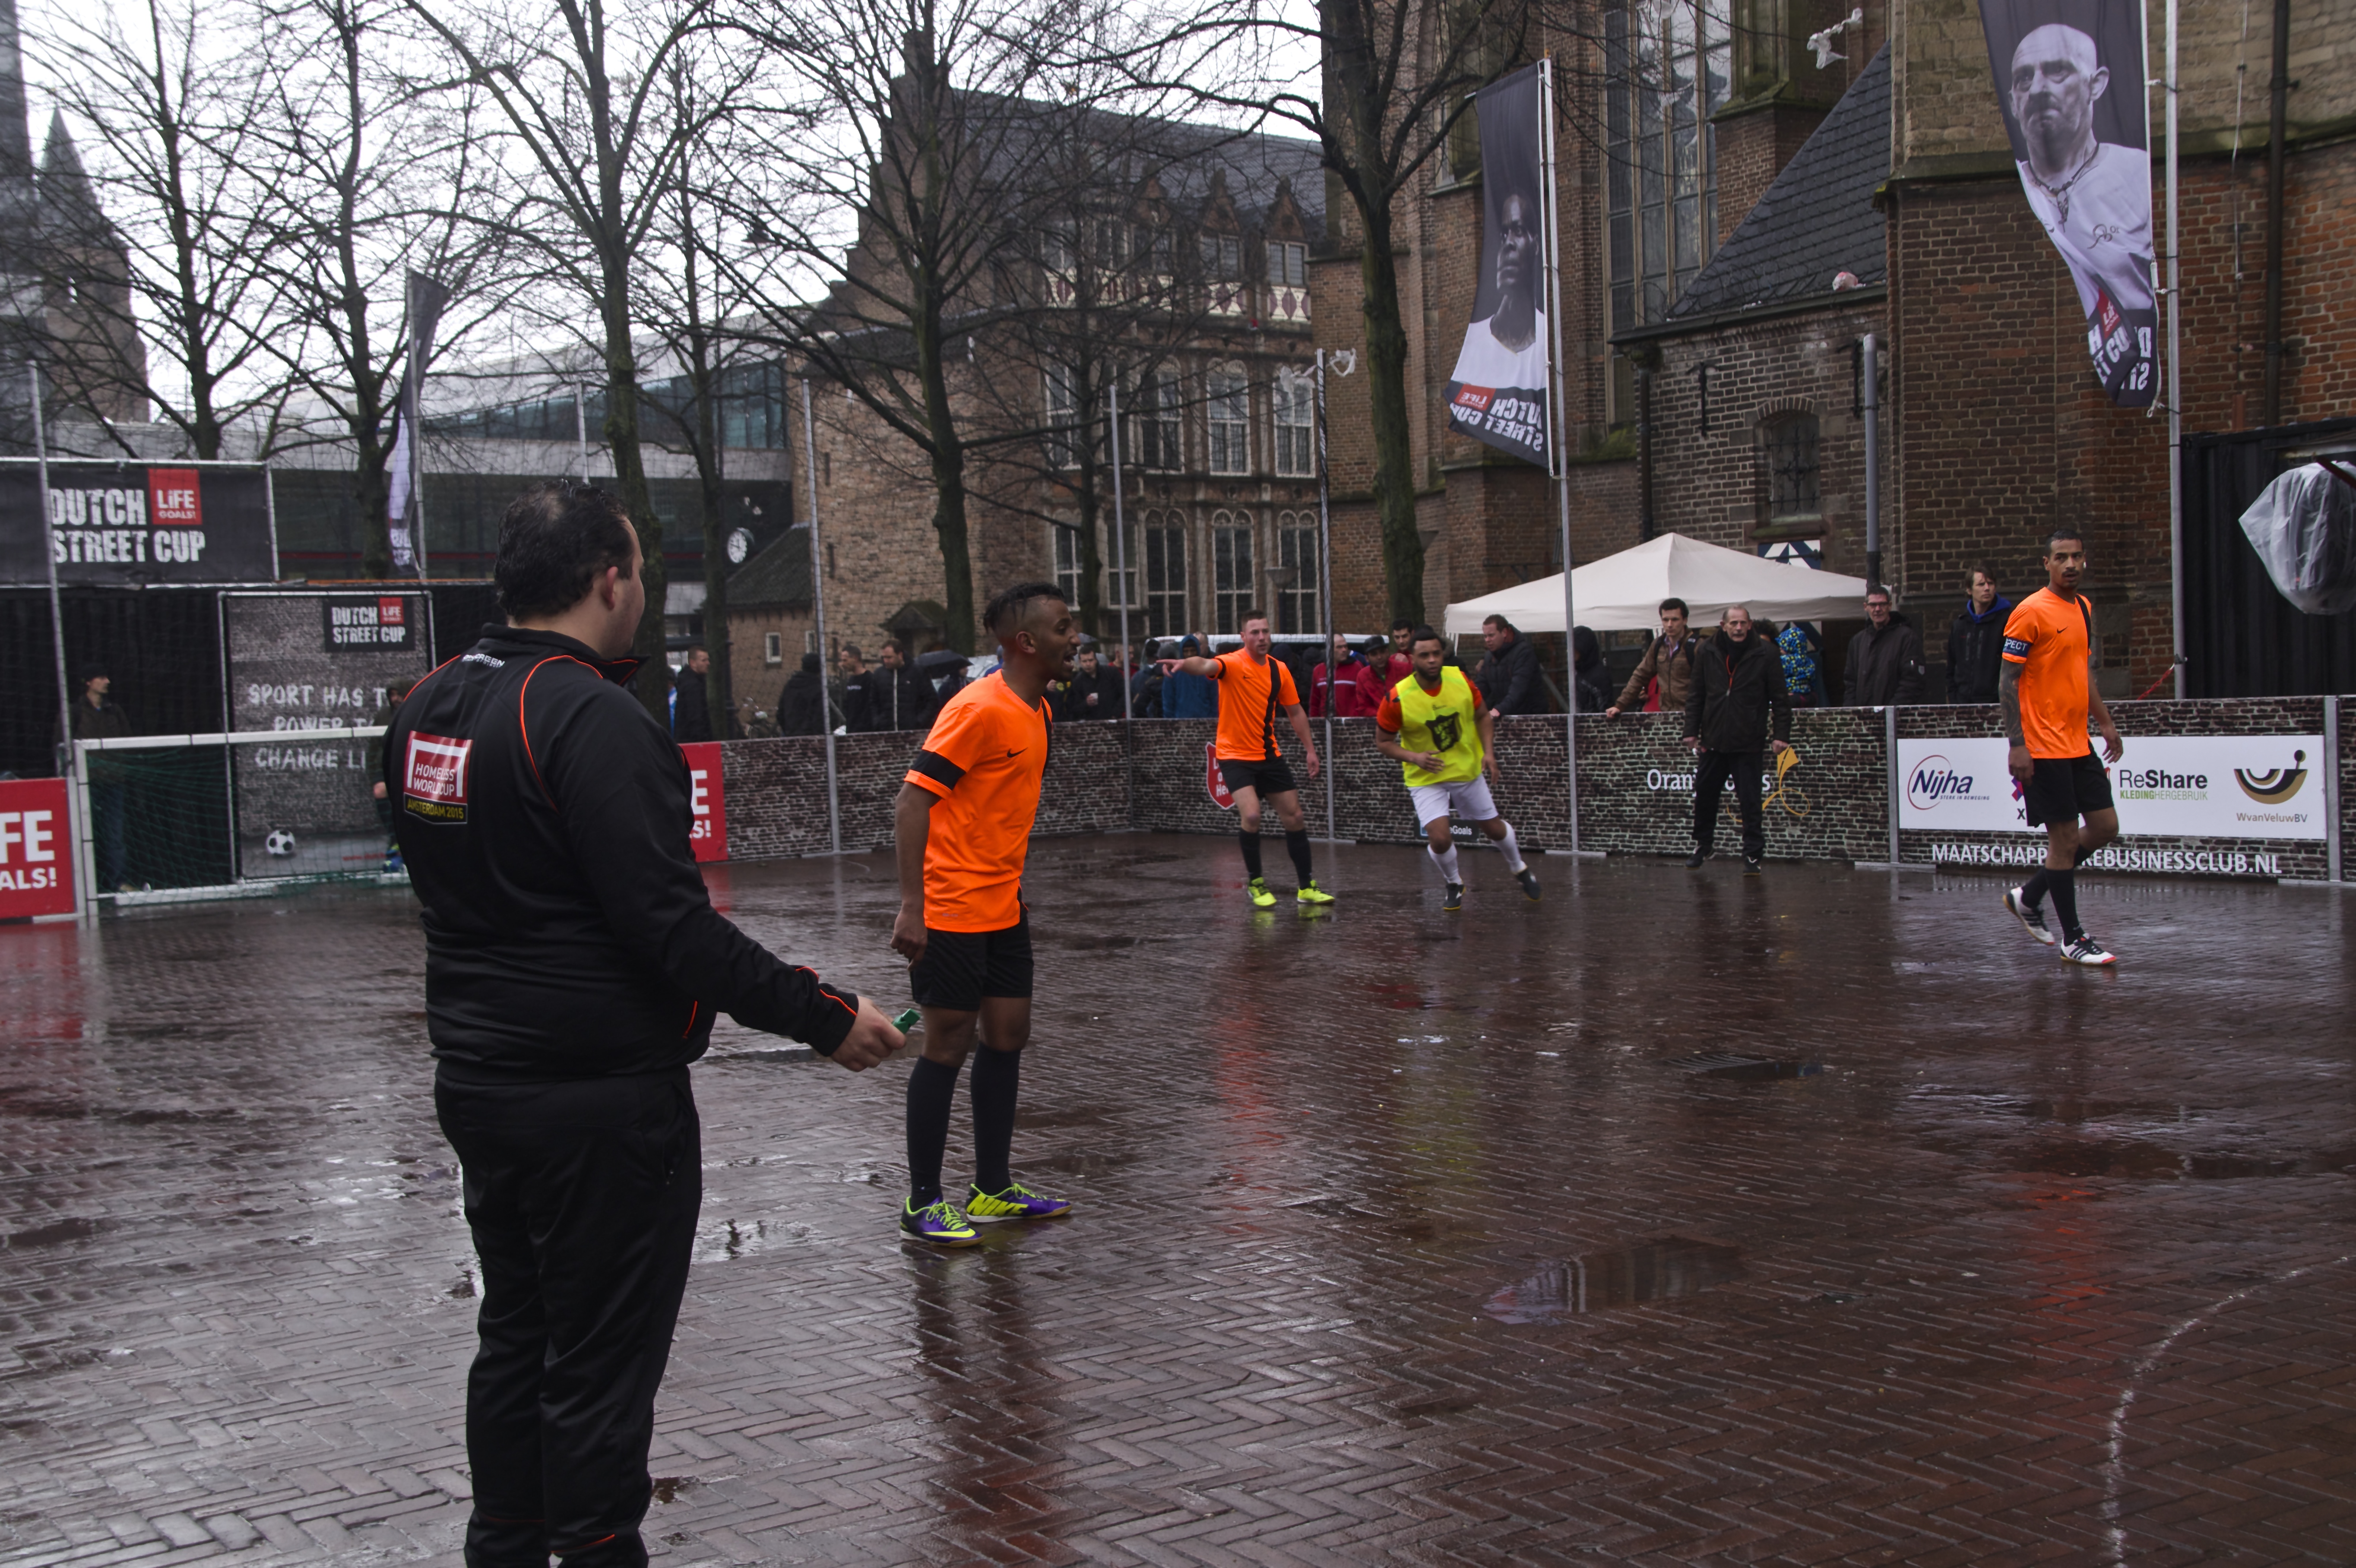 Dutch Street Cup Apeldoorn: sporten voor een betere toekomst